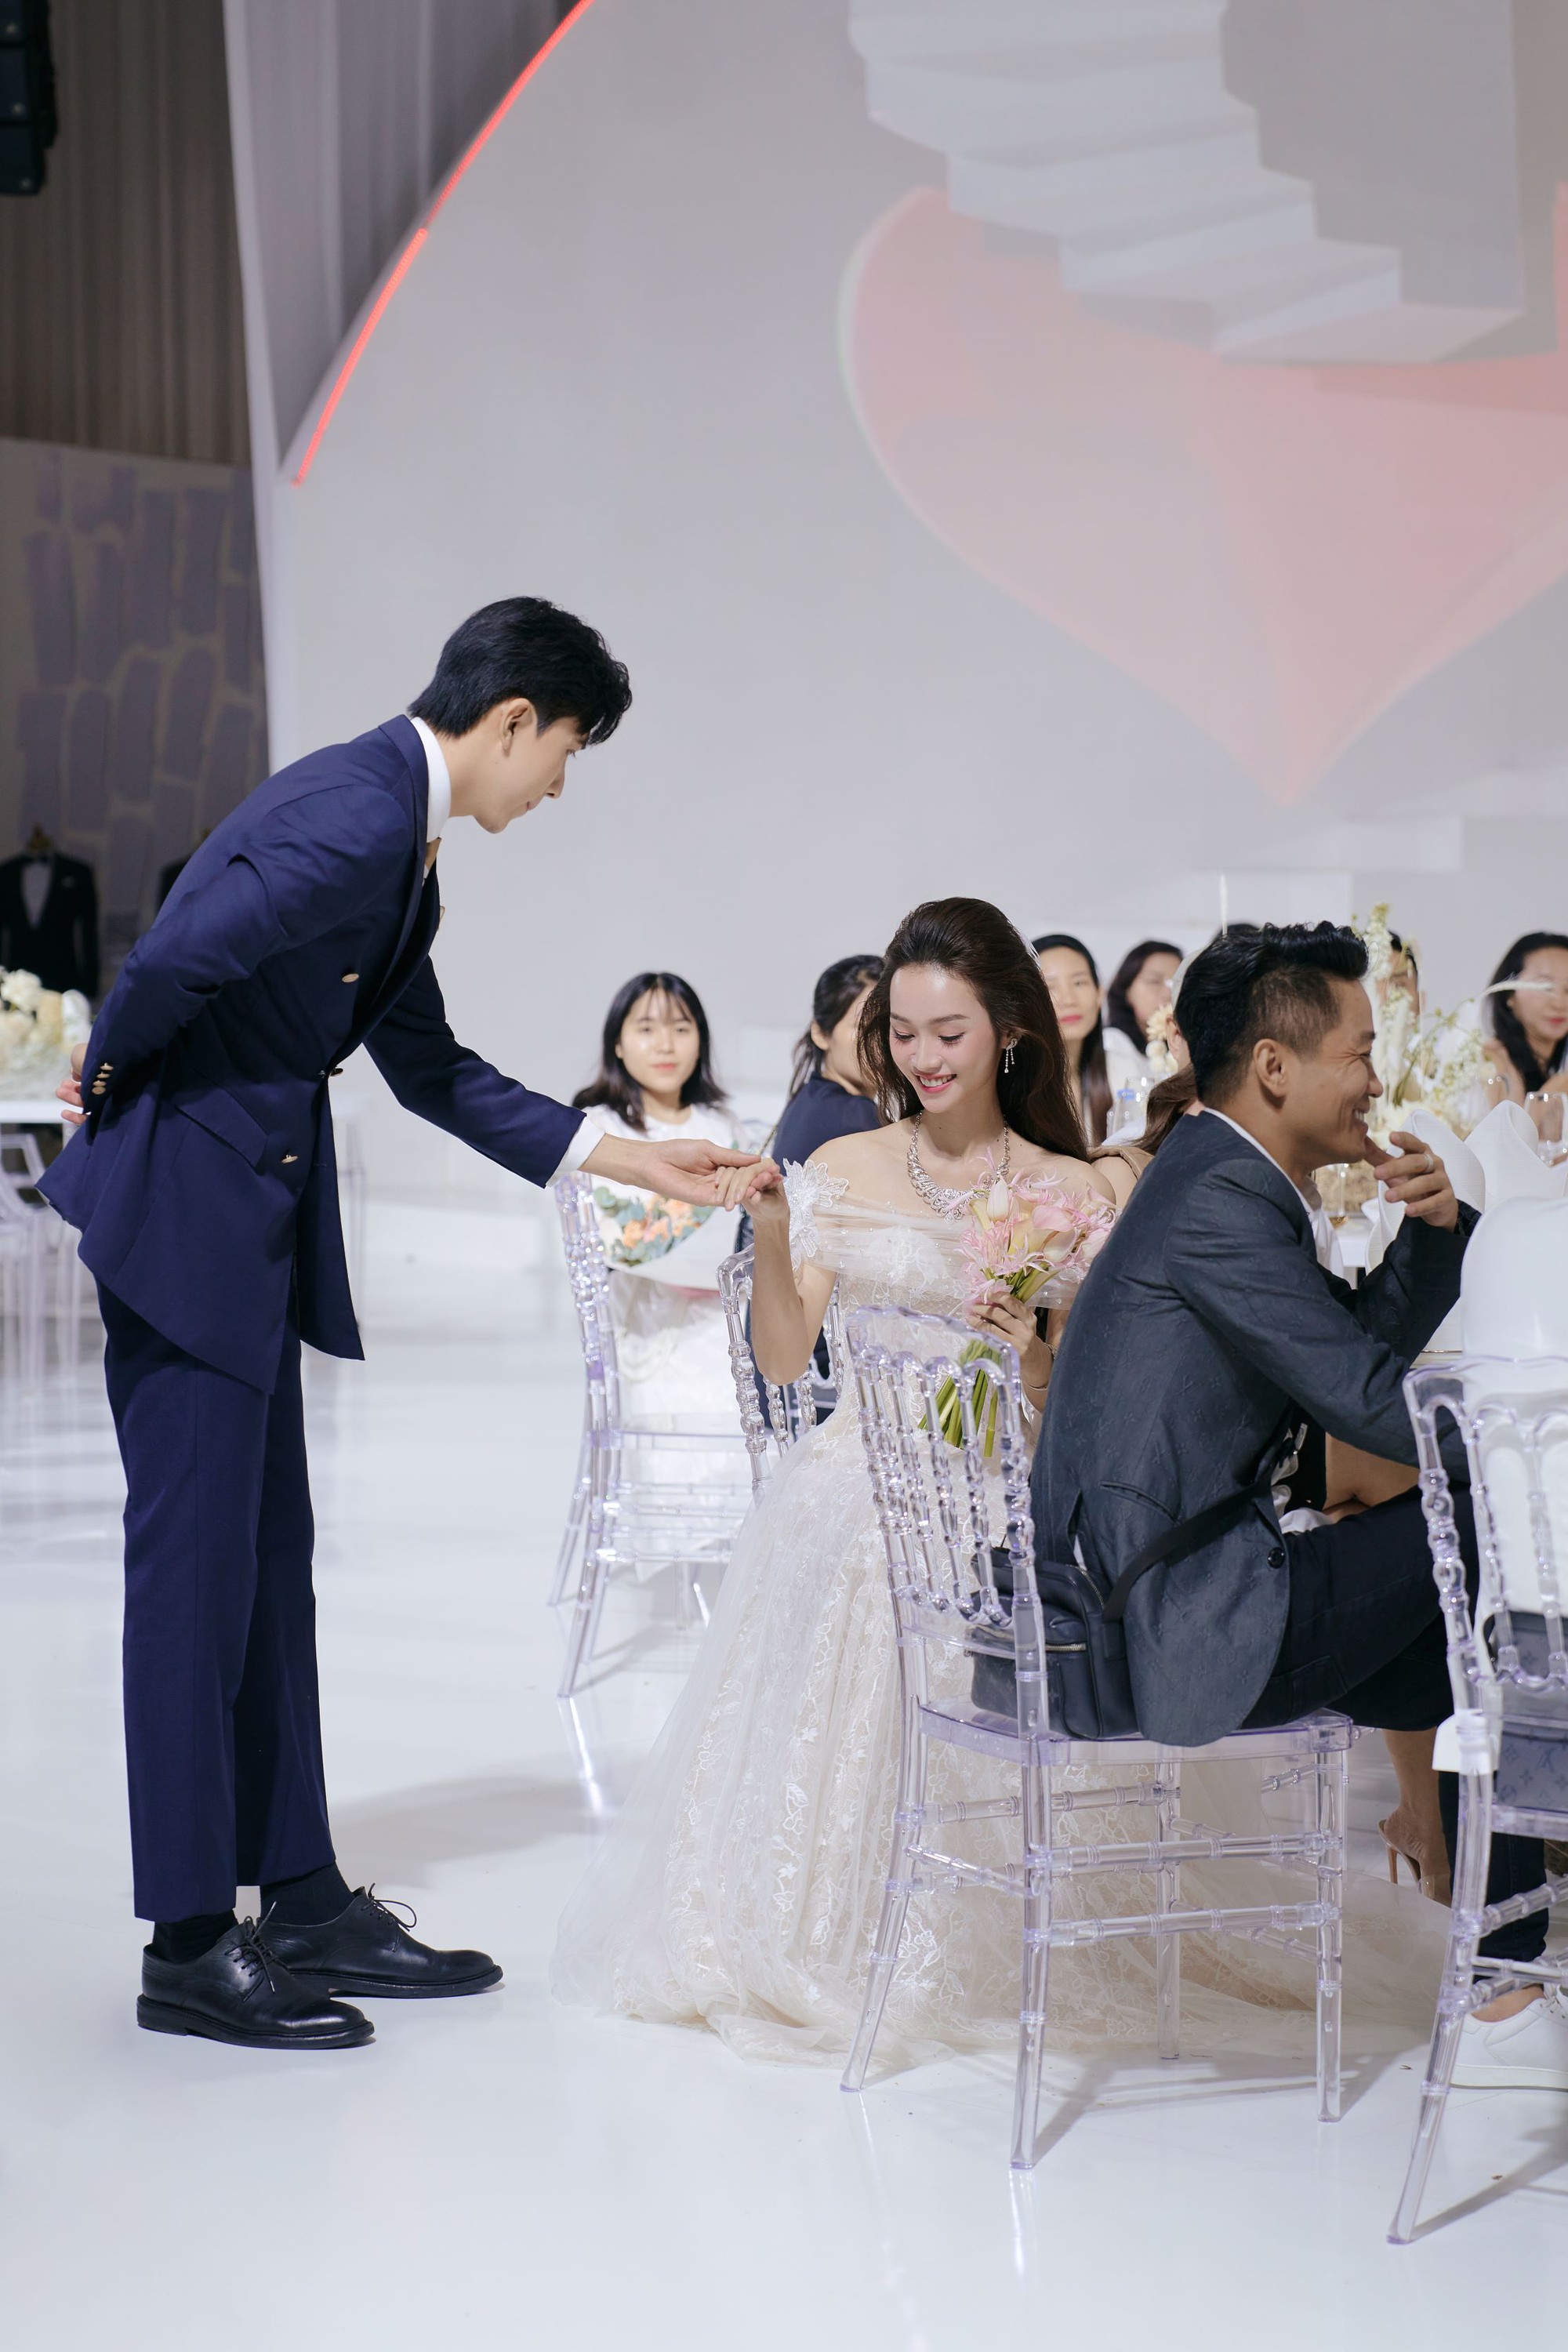 Á hậu Hương Ly cùng dàn người đẹp lộng lẫy trên sàn diễn thời trang áo cưới - Ảnh 4.